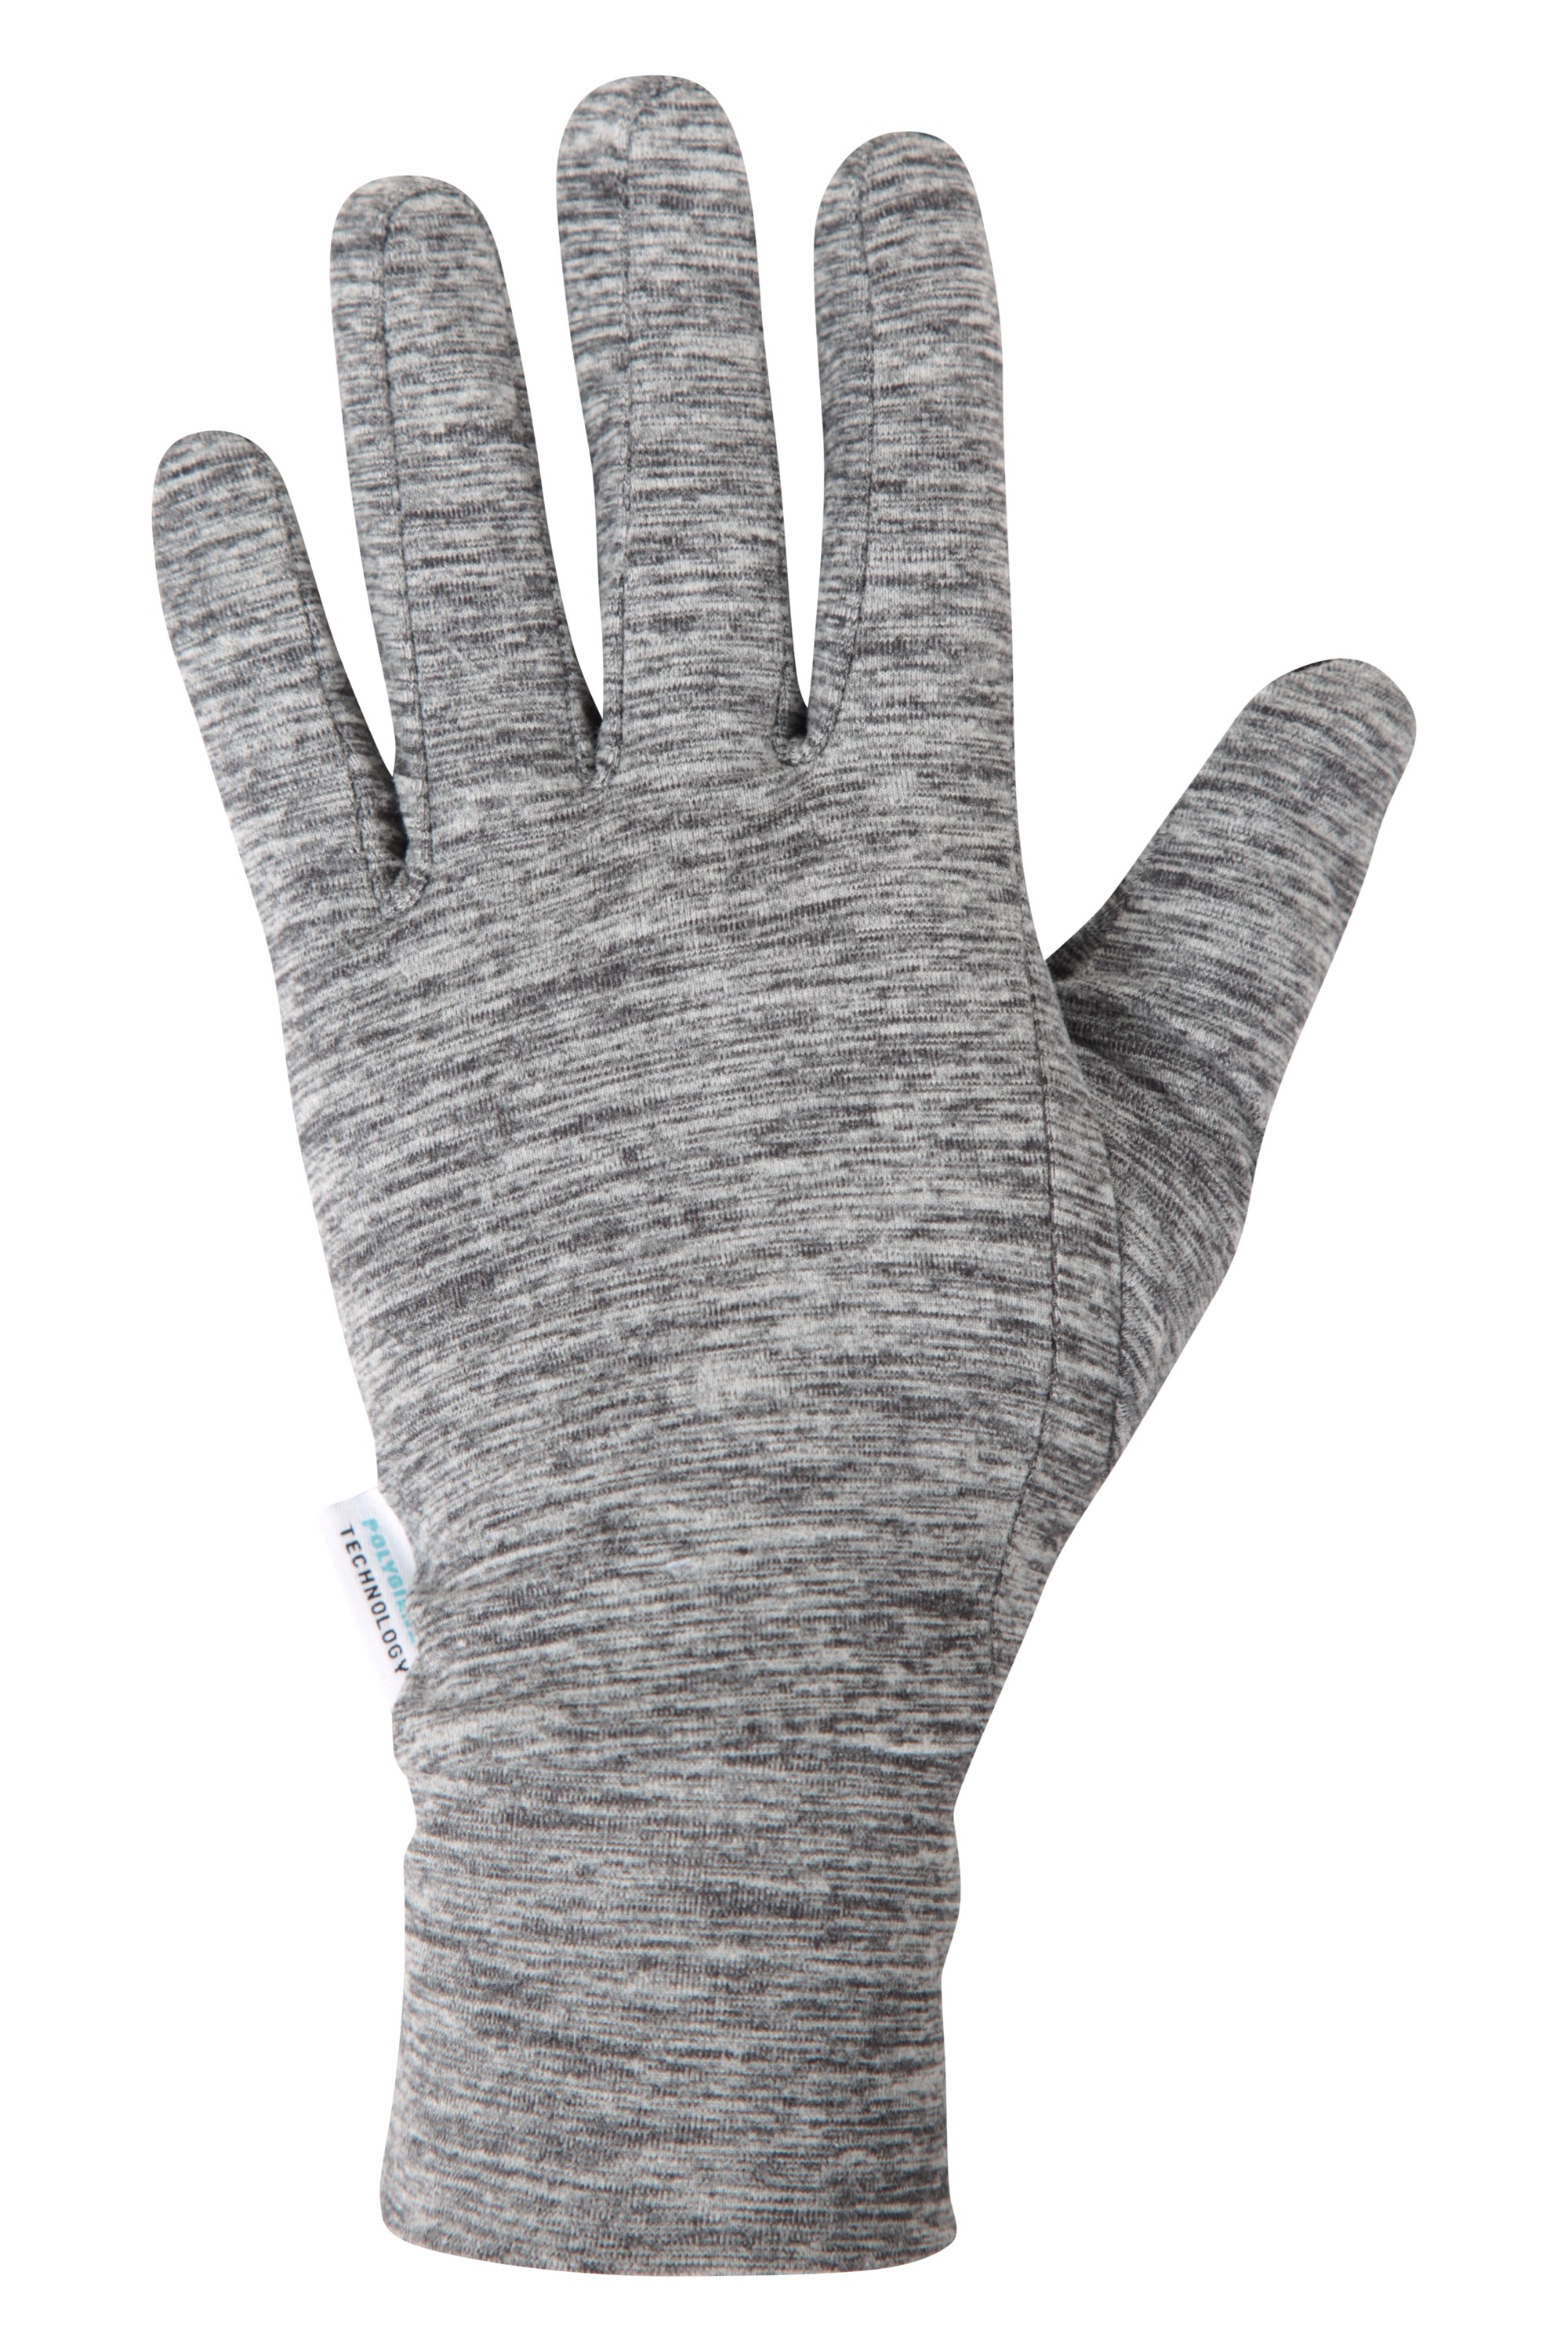 Sprint damskie rękawice do biegania z obsługą ekranów dotykowych - Grey